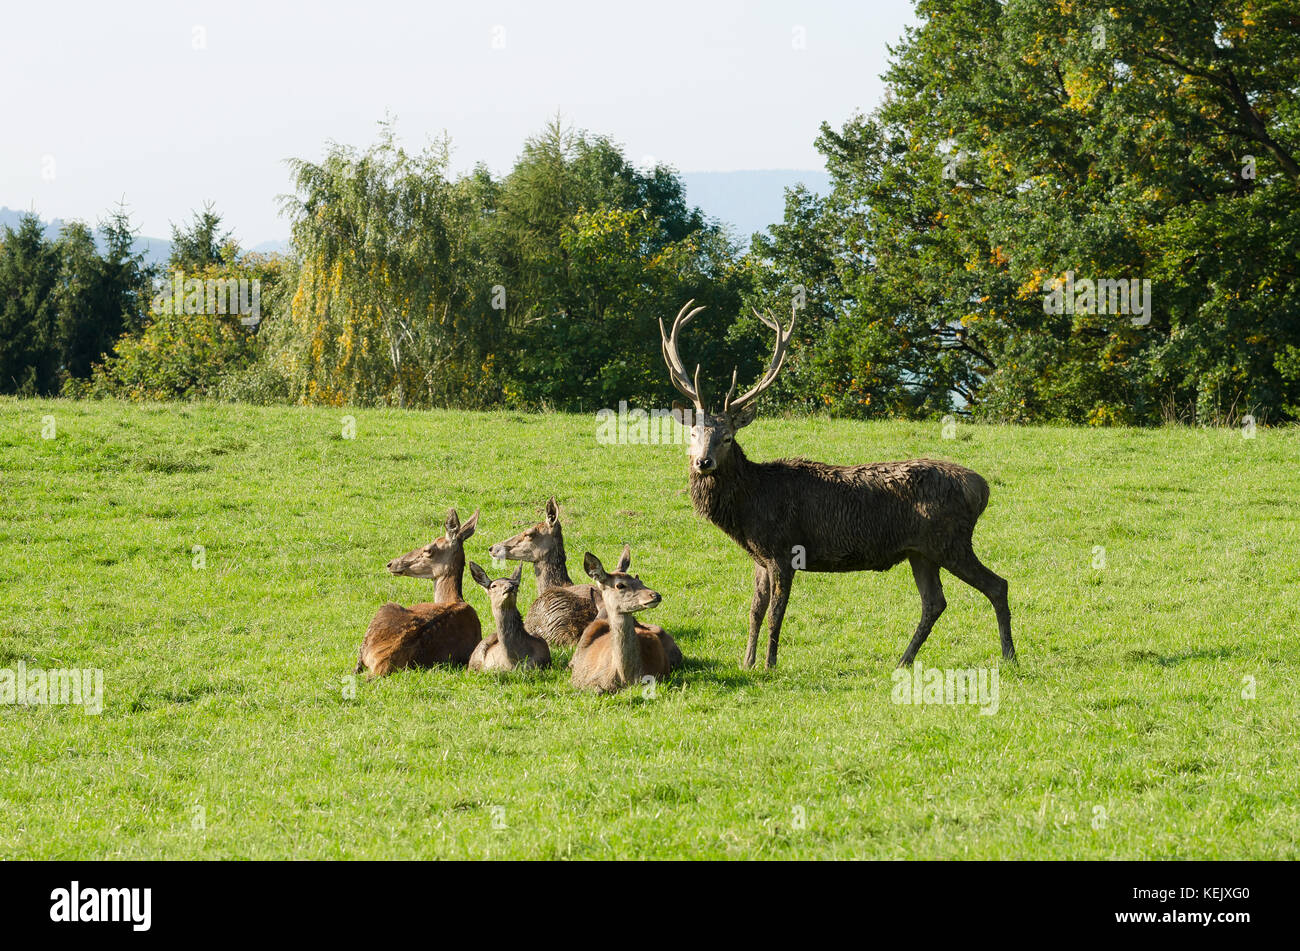 Grupo de ciervo europeo en un potrero en el sol del verano. mature stag (macho) y cuatro hinds (hembras). manada de Cervus elaphus en Europa occidental. foto. Foto de stock